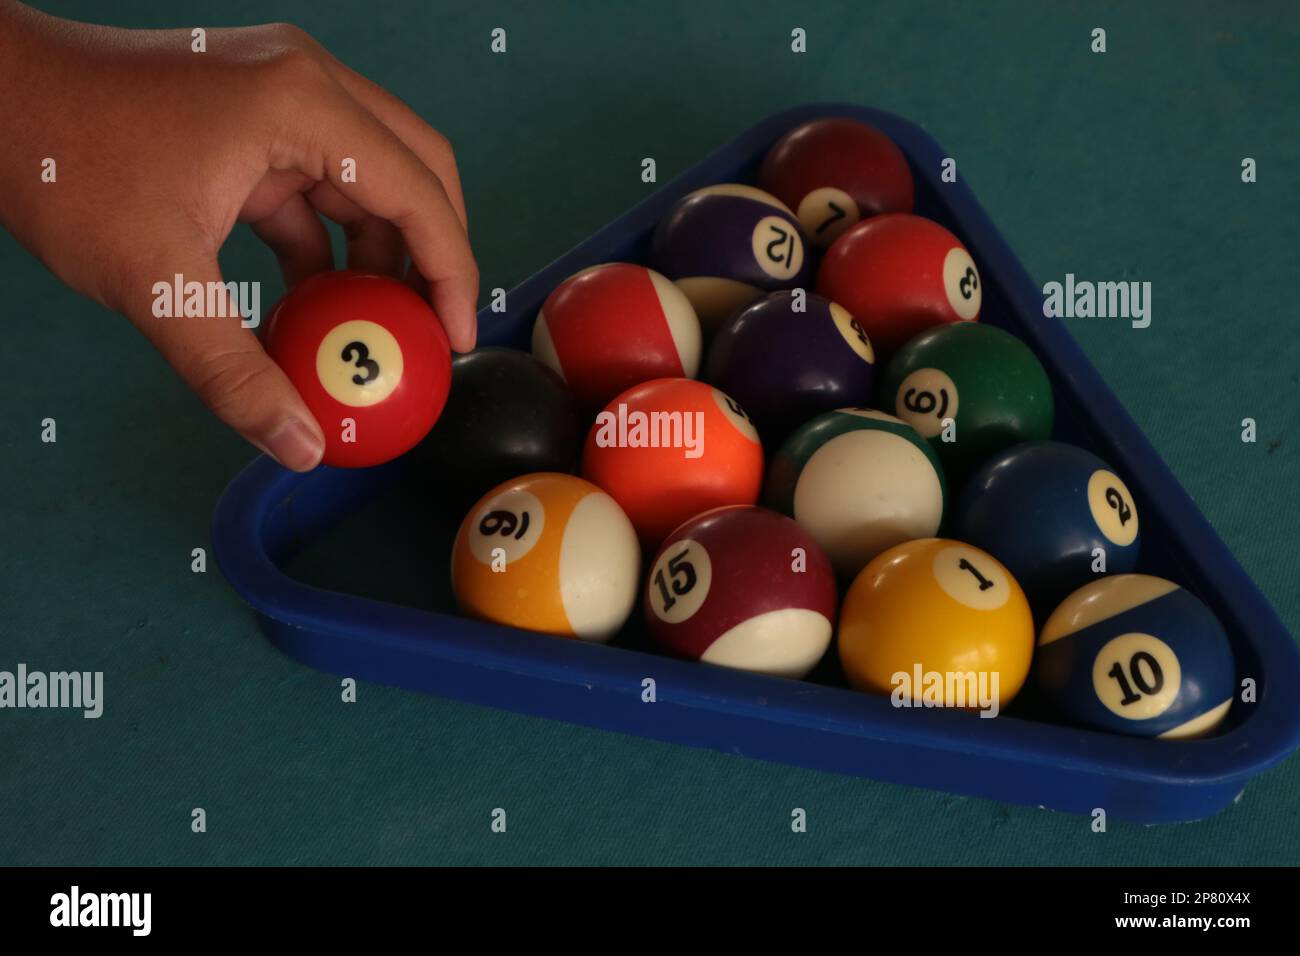 Billardbälle mit Blick von oben. Billard-Sportspiele auf einem grünen Tisch. Aktive Erholung und Unterhaltung. Stockfoto